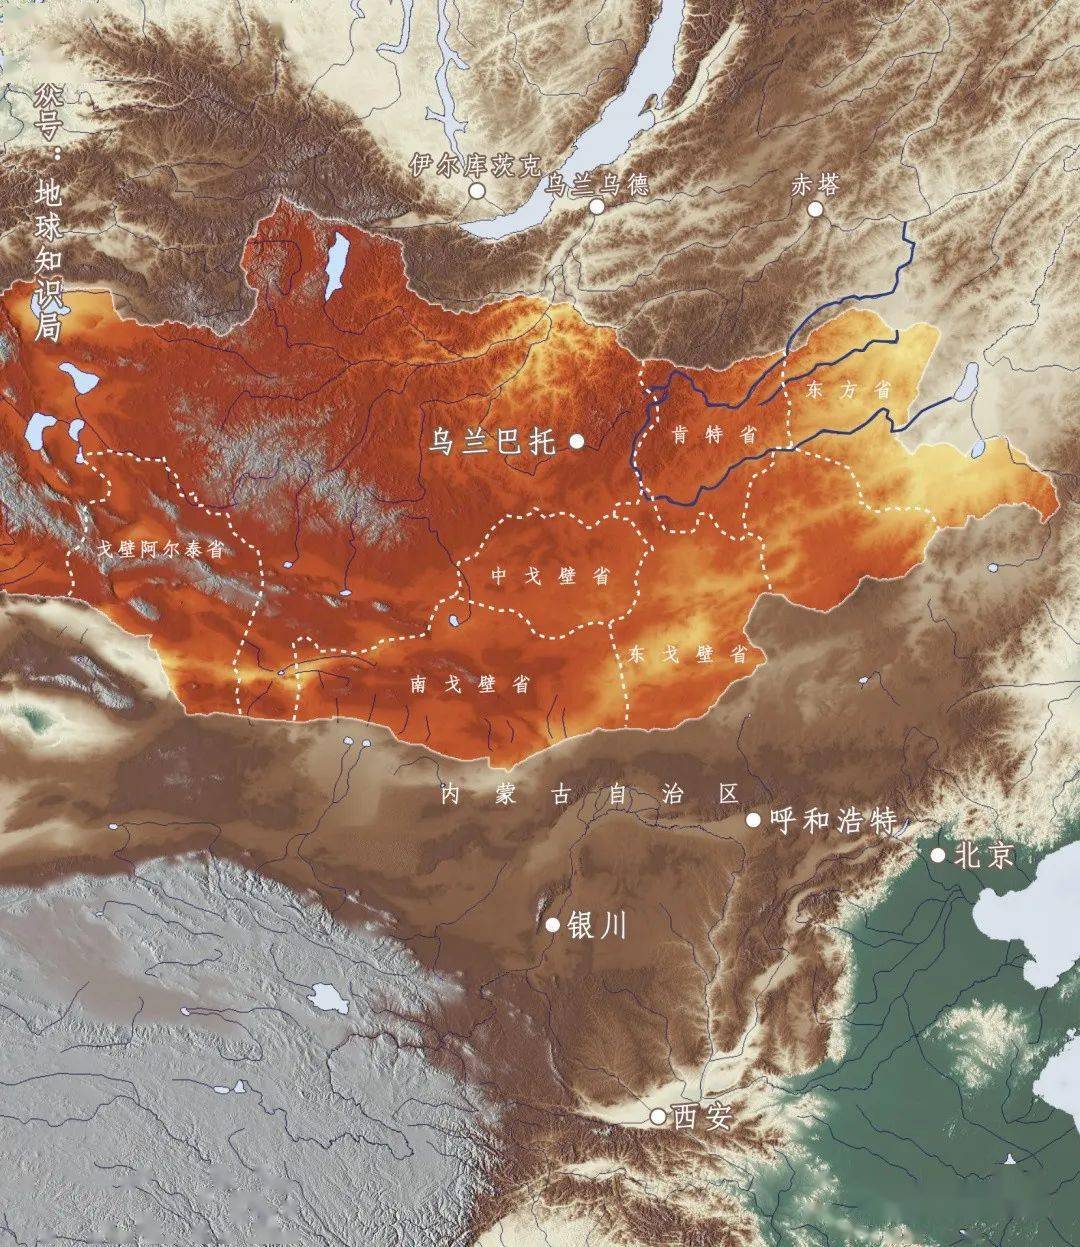 这从蒙古国省份命名上也能看得出来,中南部的三个省份分别为东戈壁省